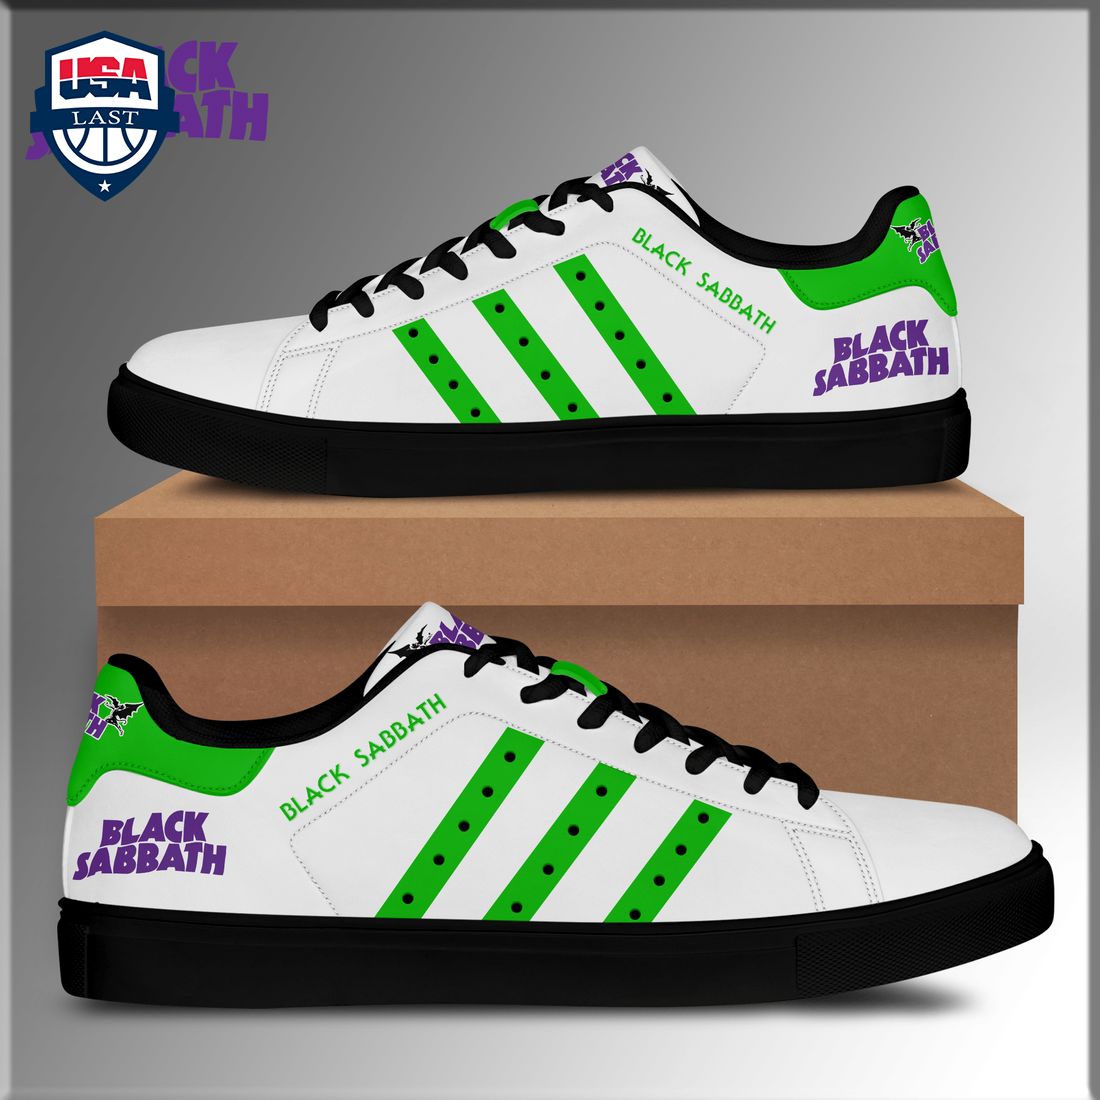 Black Sabbath Green Stripes Style 2 Stan Smith Low Top Shoes